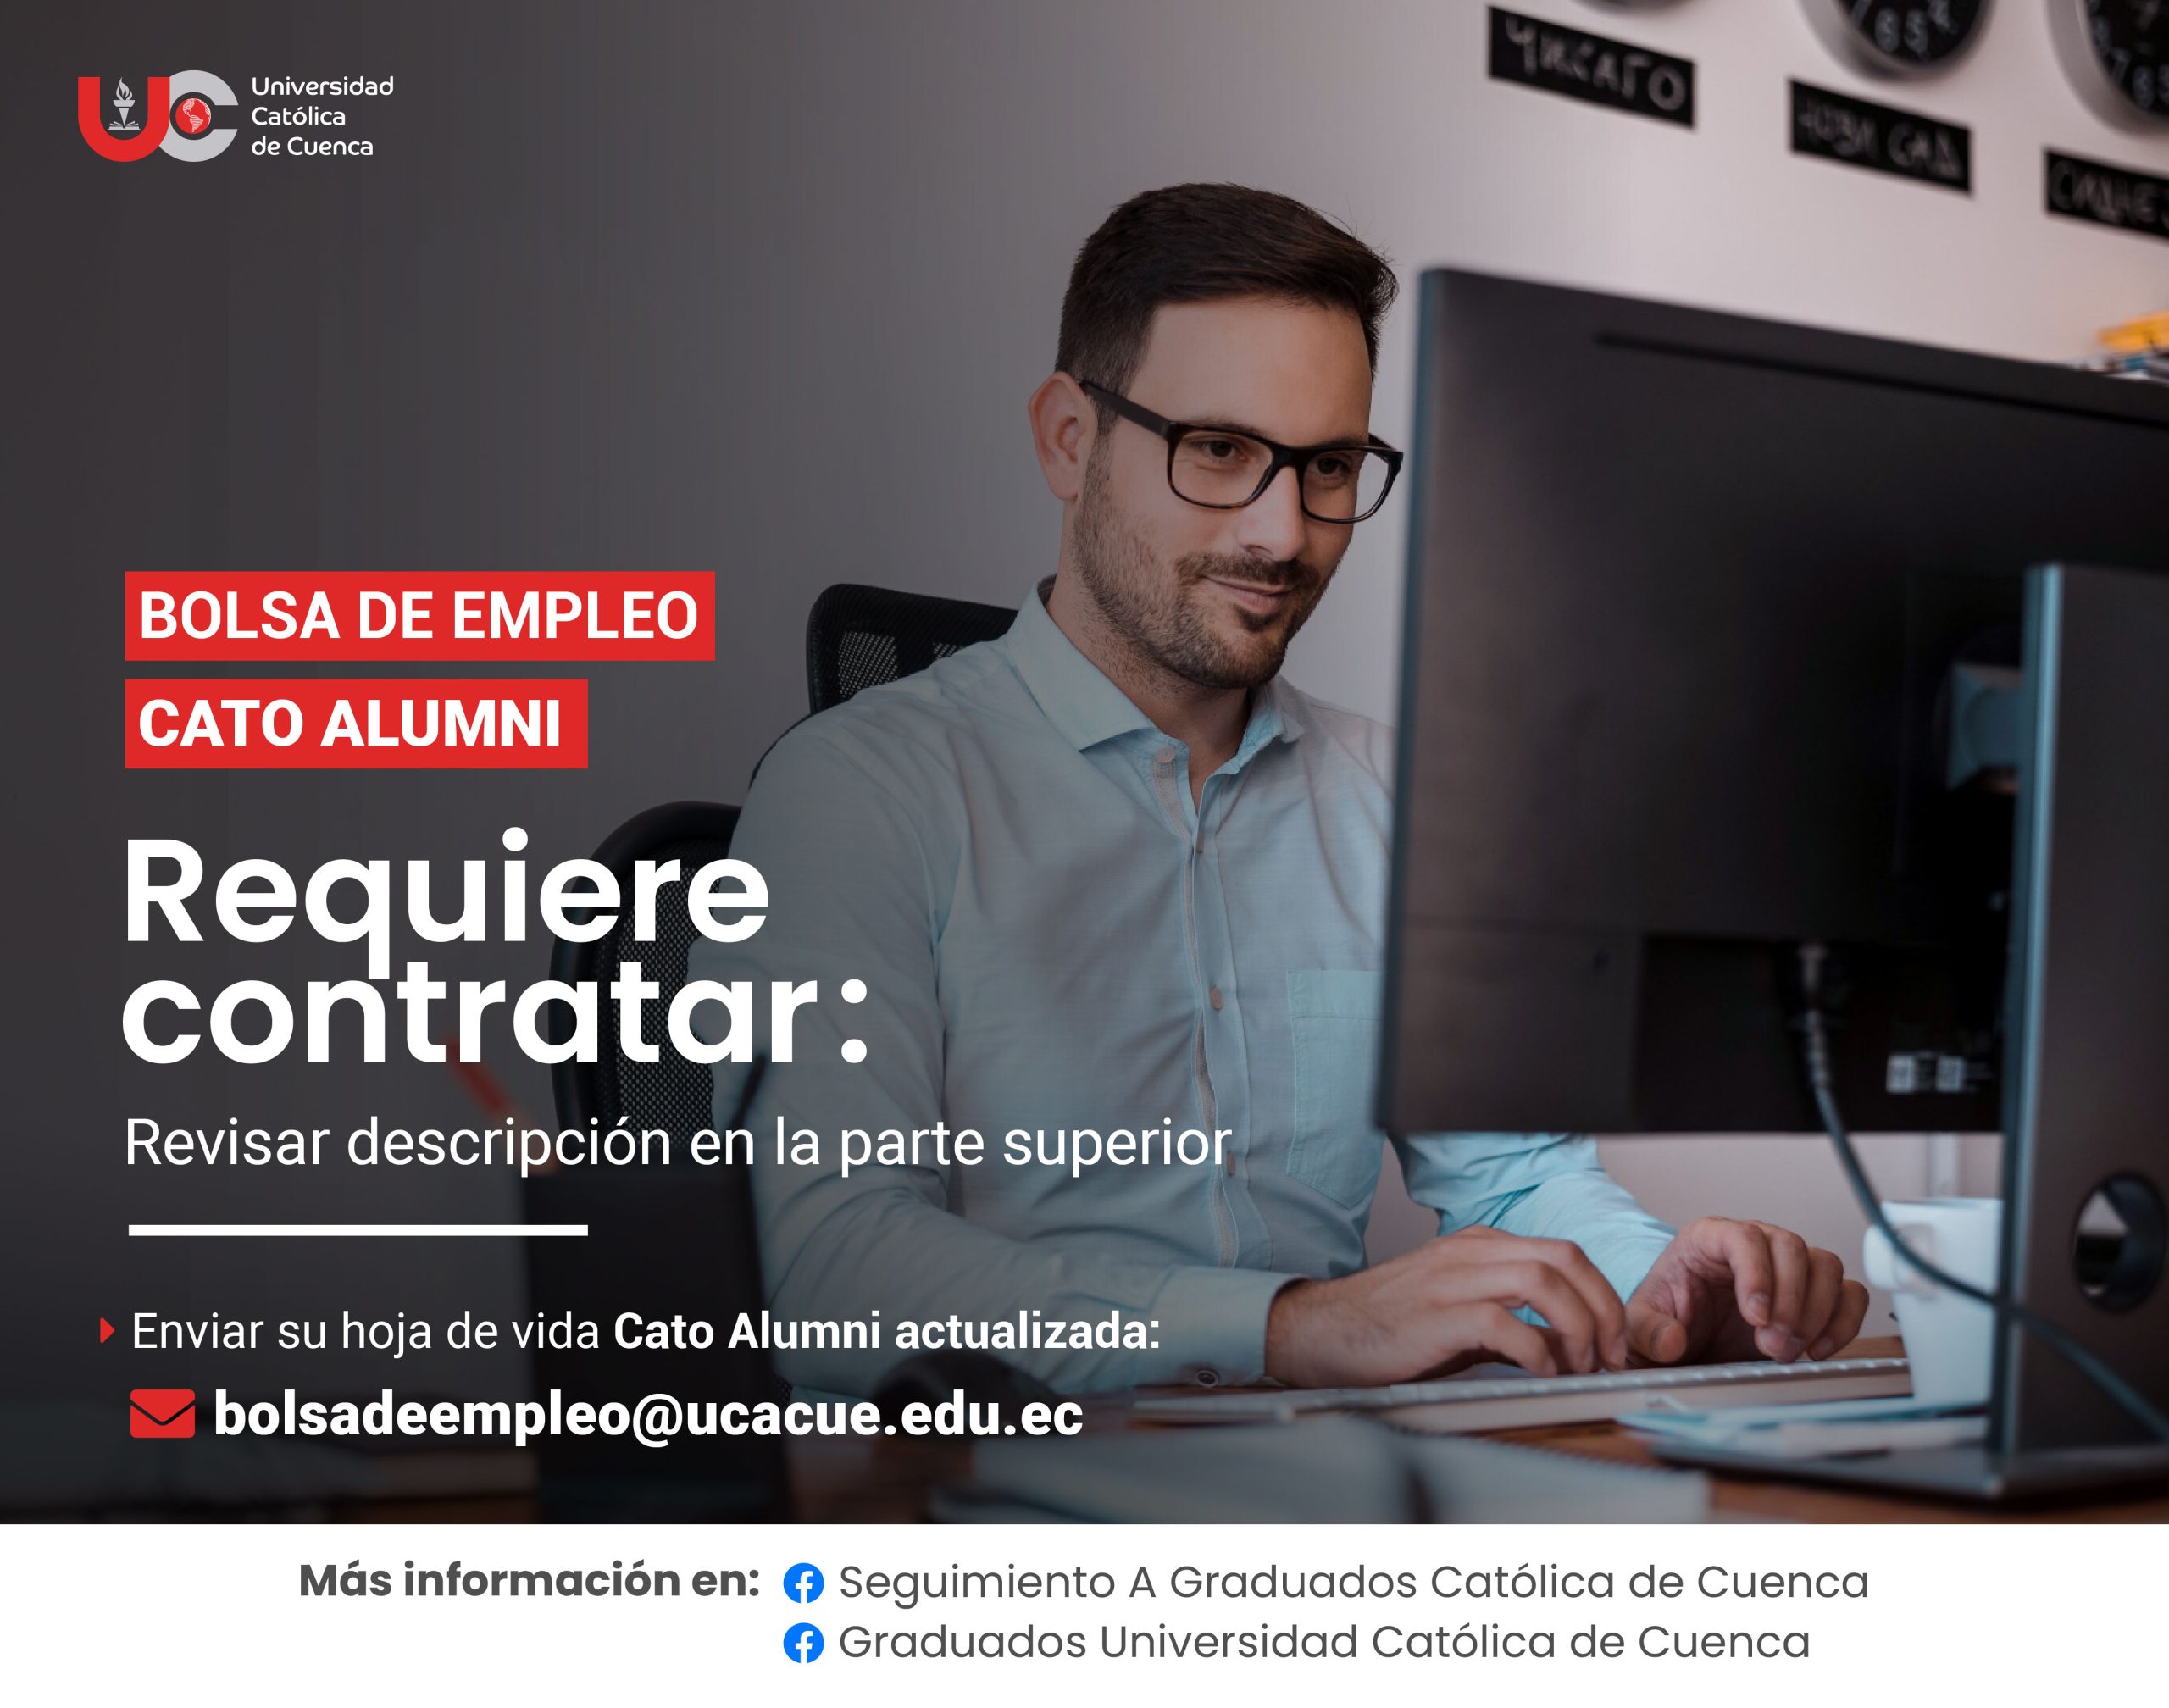 Institución de Educación Superior, requiere contratar para la ciudad de Cuenca, profesional Ingeniero de Sistemas o afines.